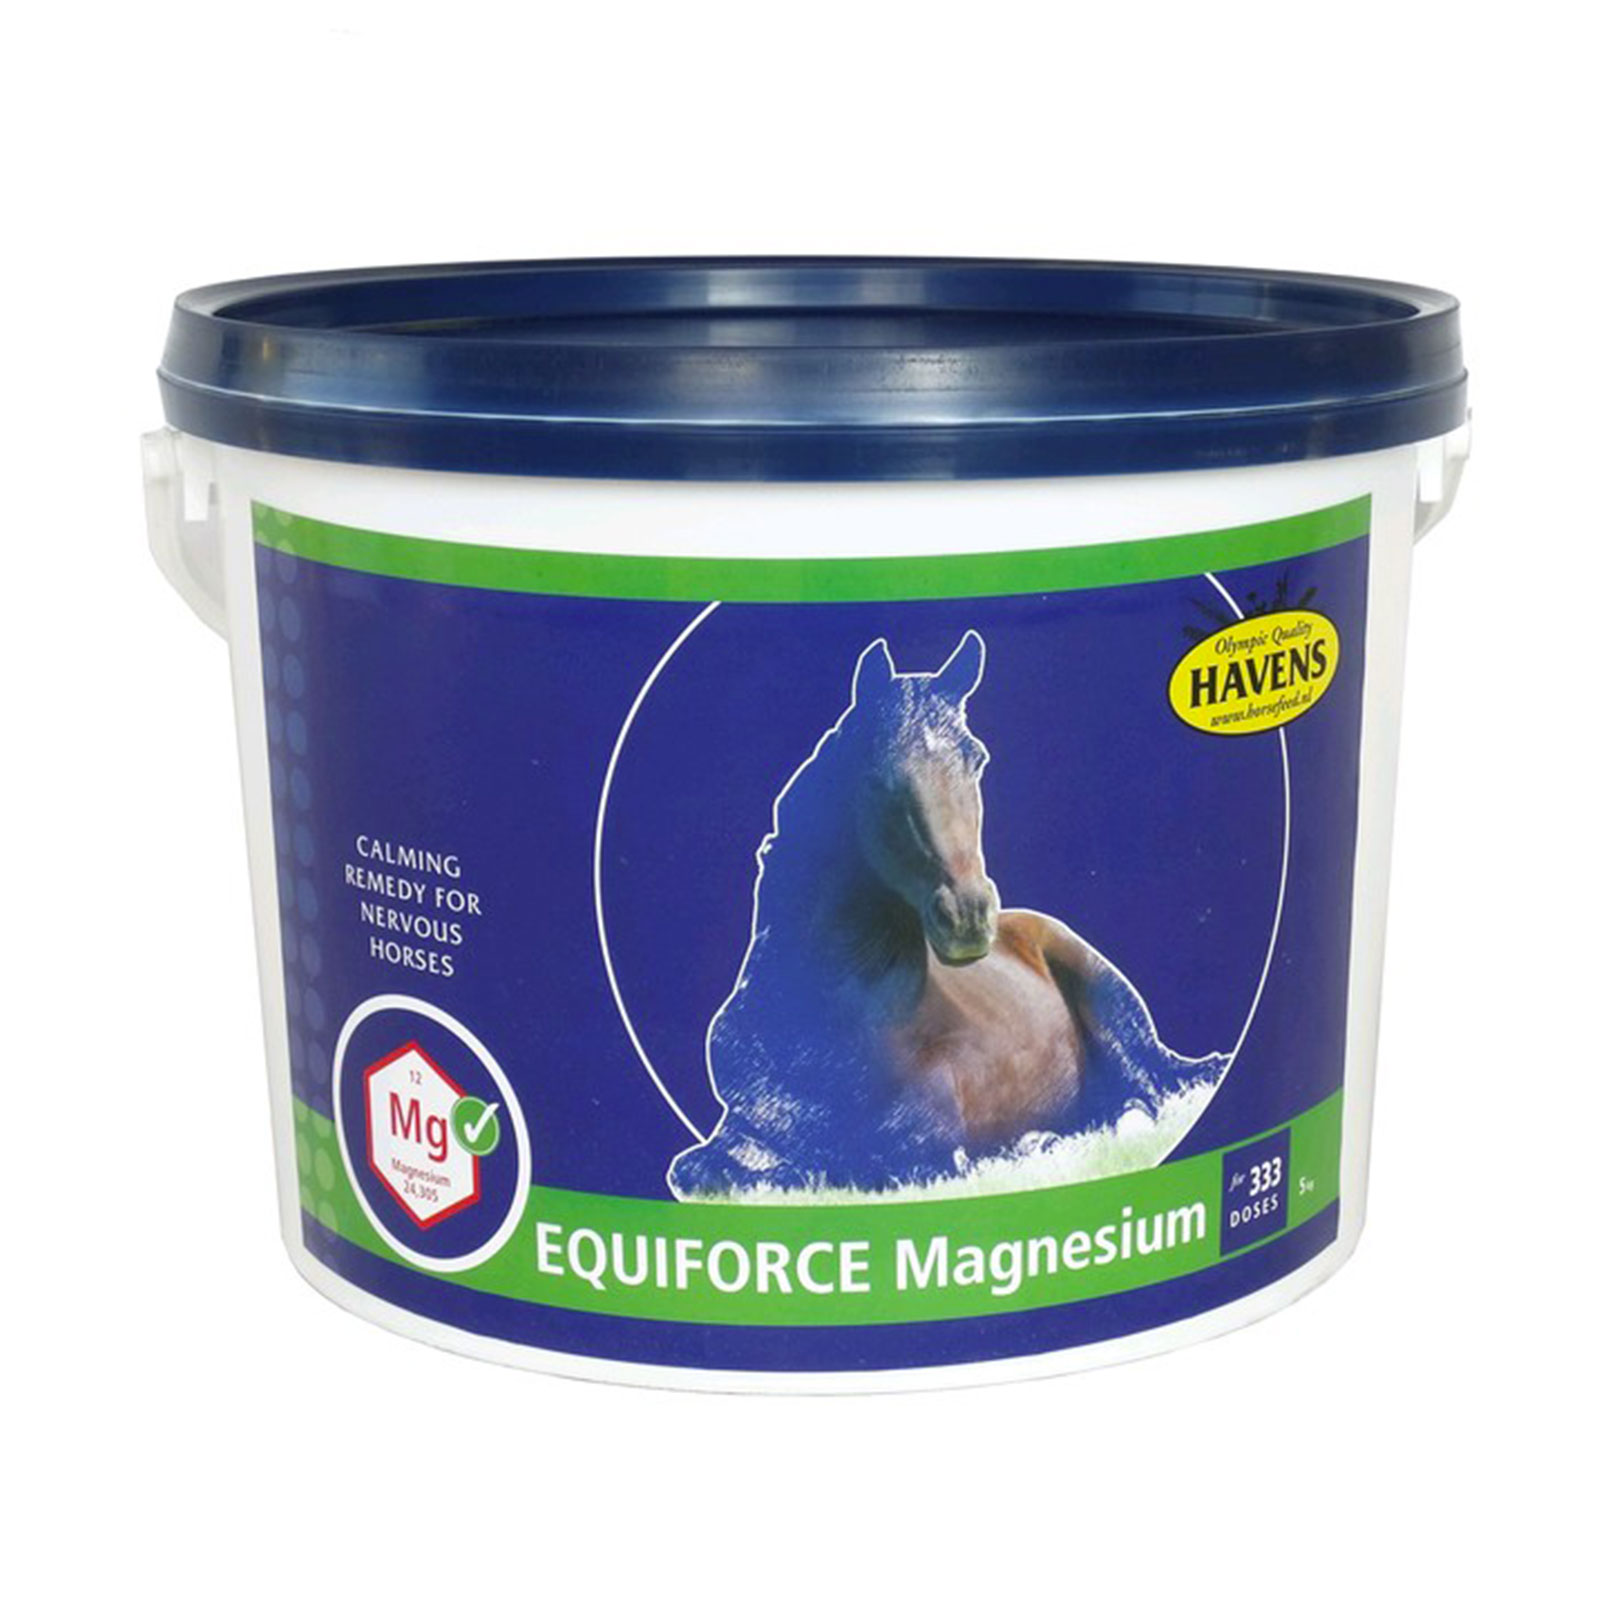 EquiForce Magnesium 5kg - 